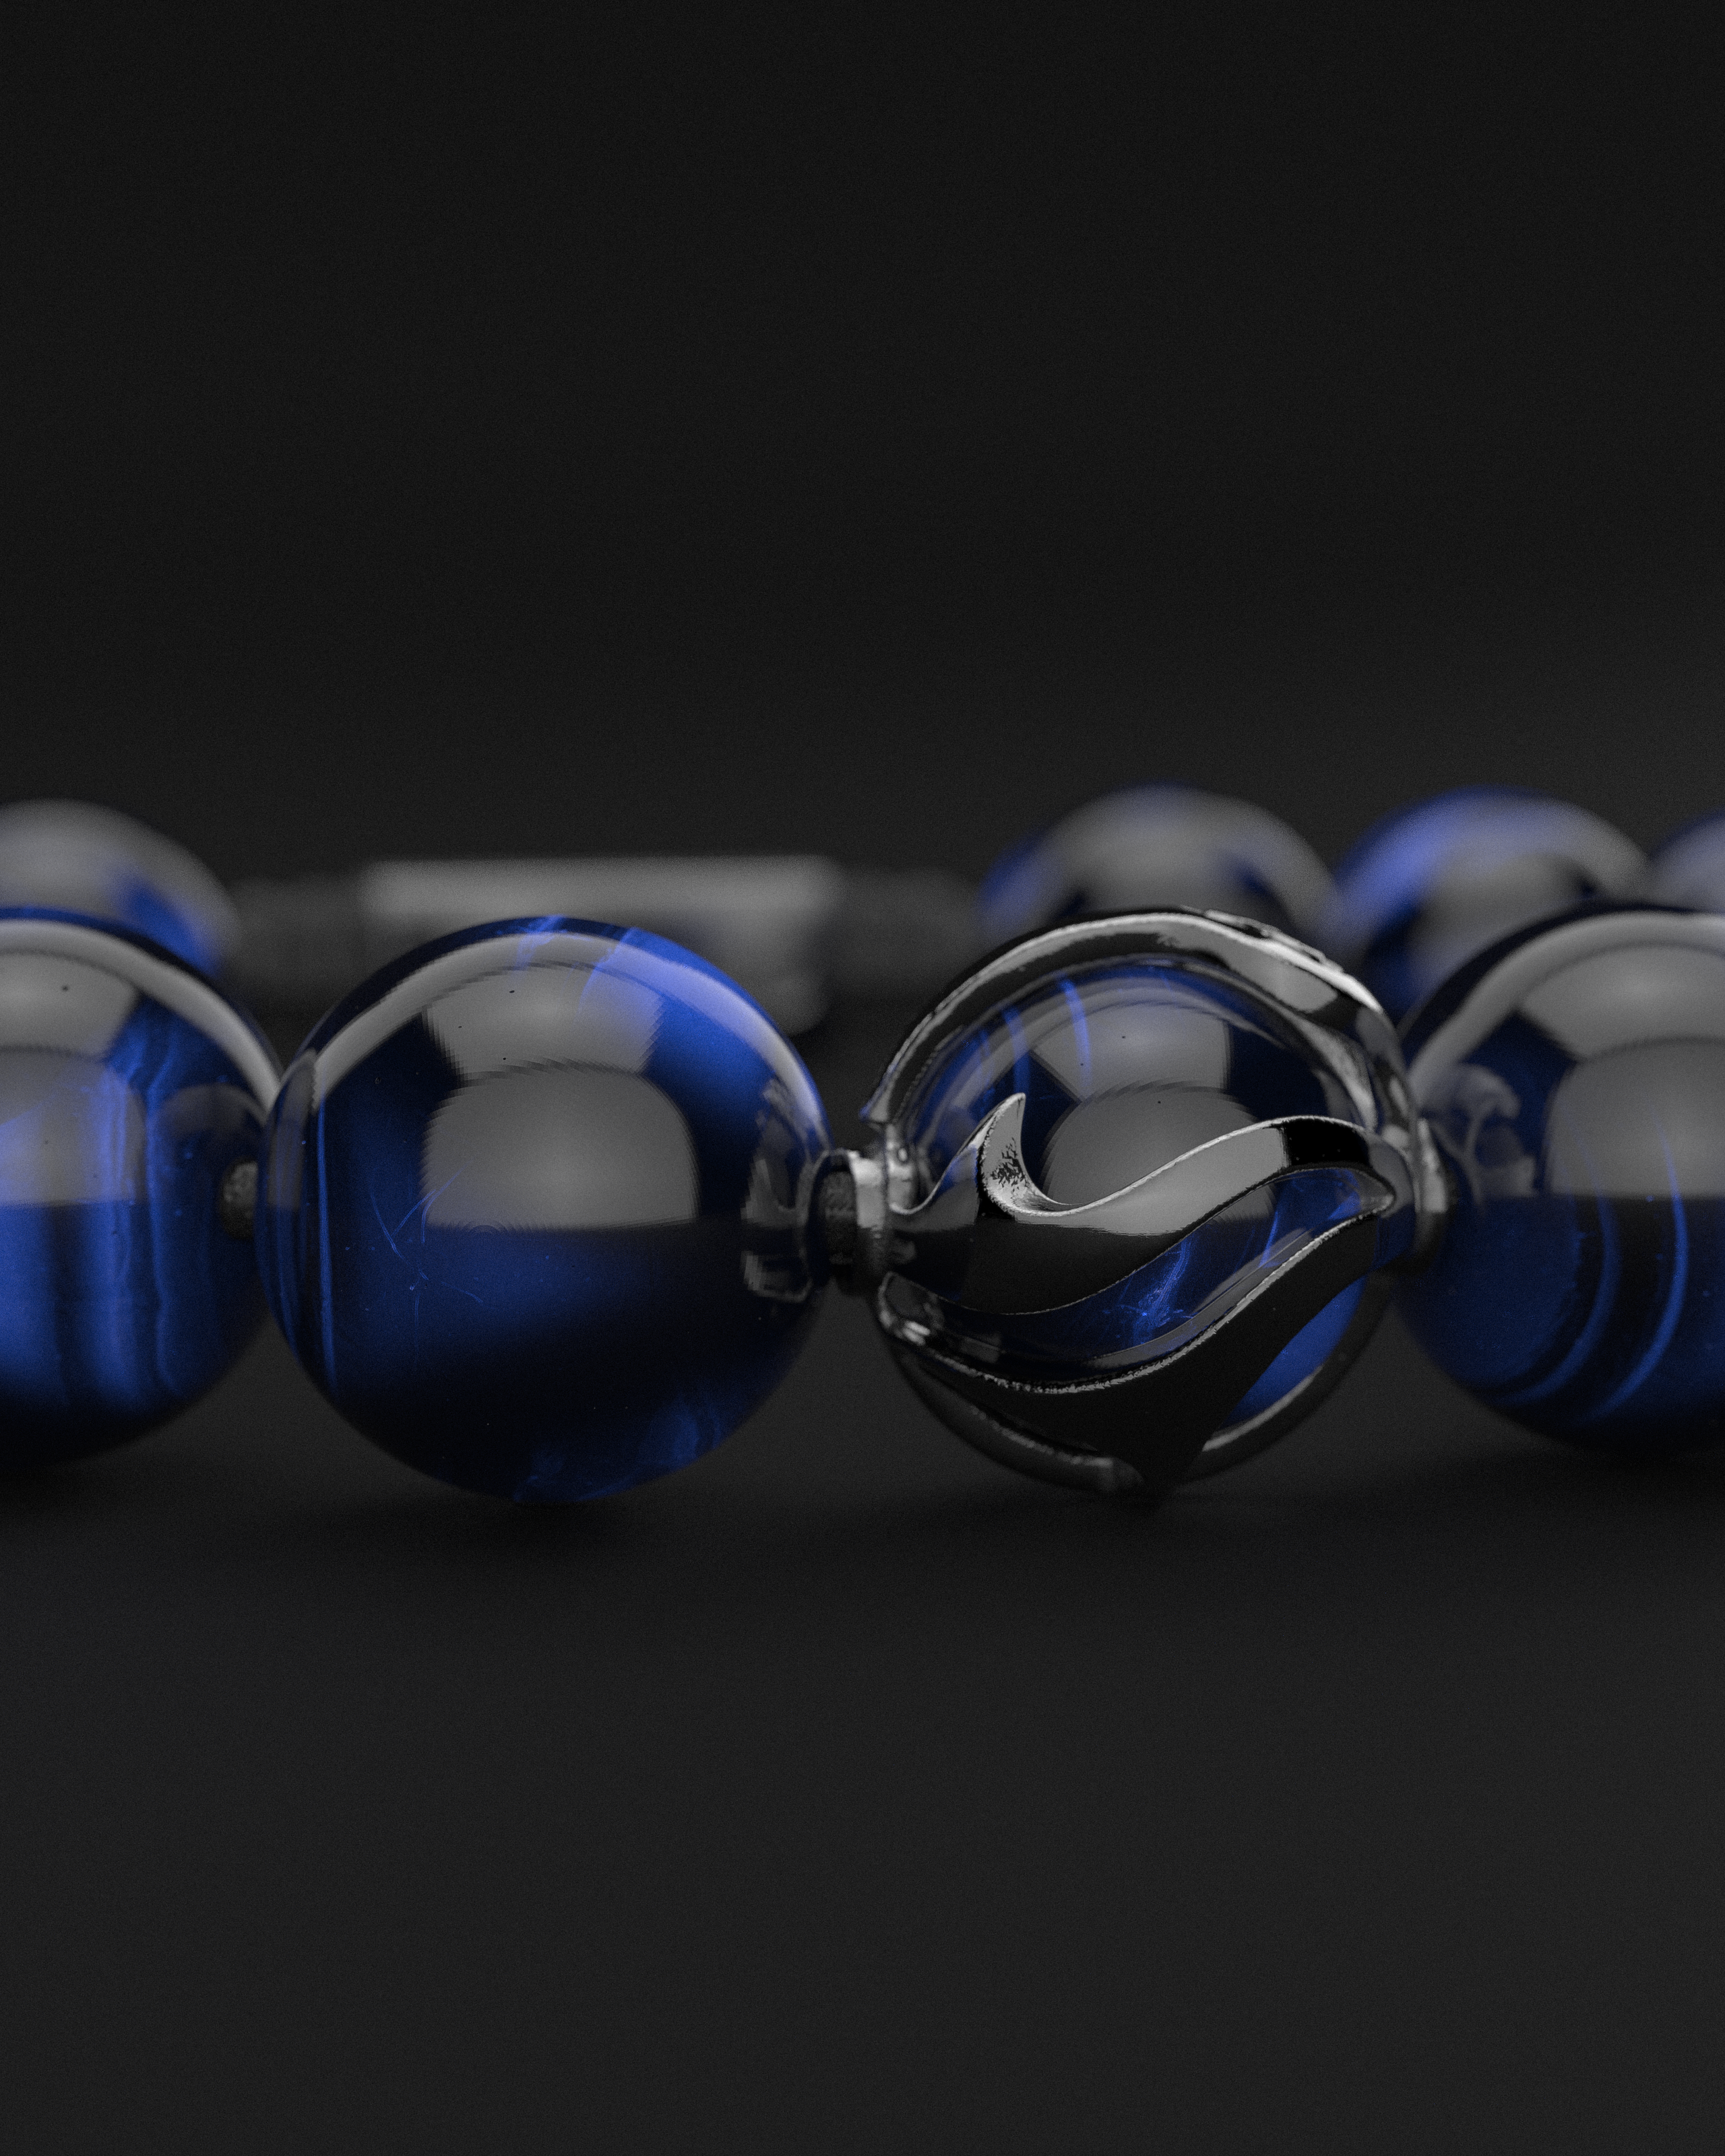 Blue Tiger Eye Bracelet 12mm | Waves